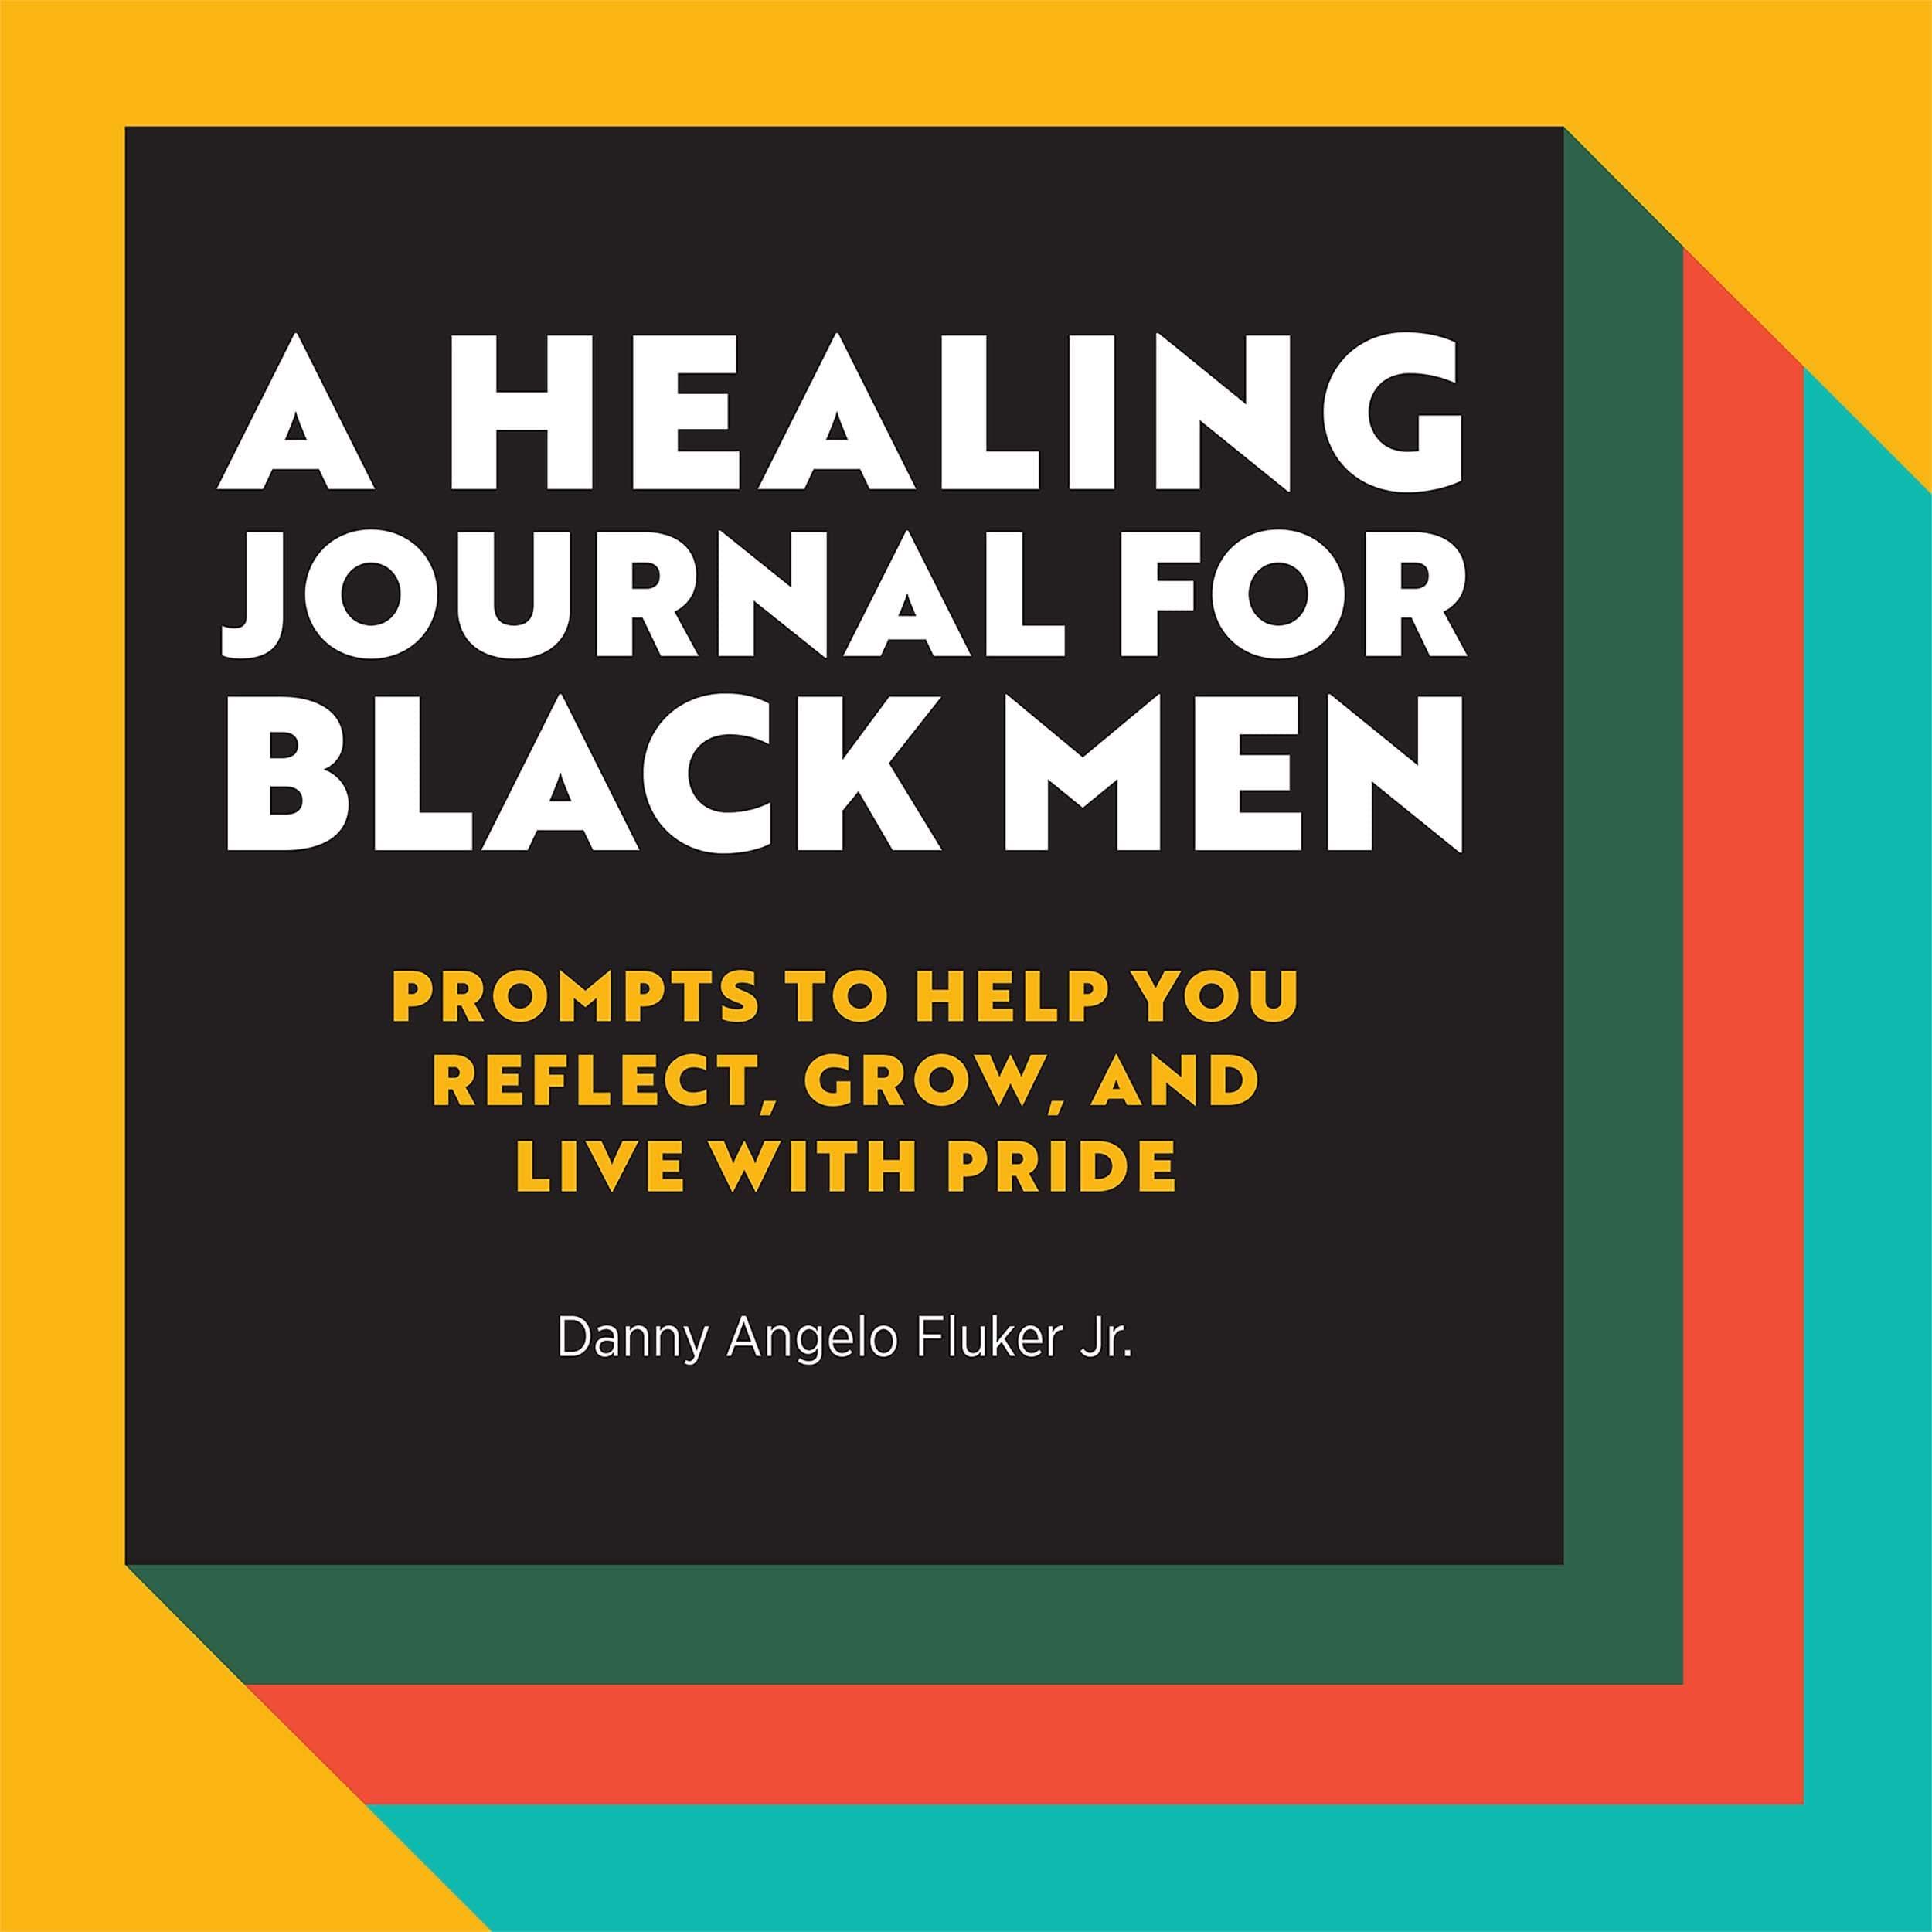 Healing Magazine for Black Men